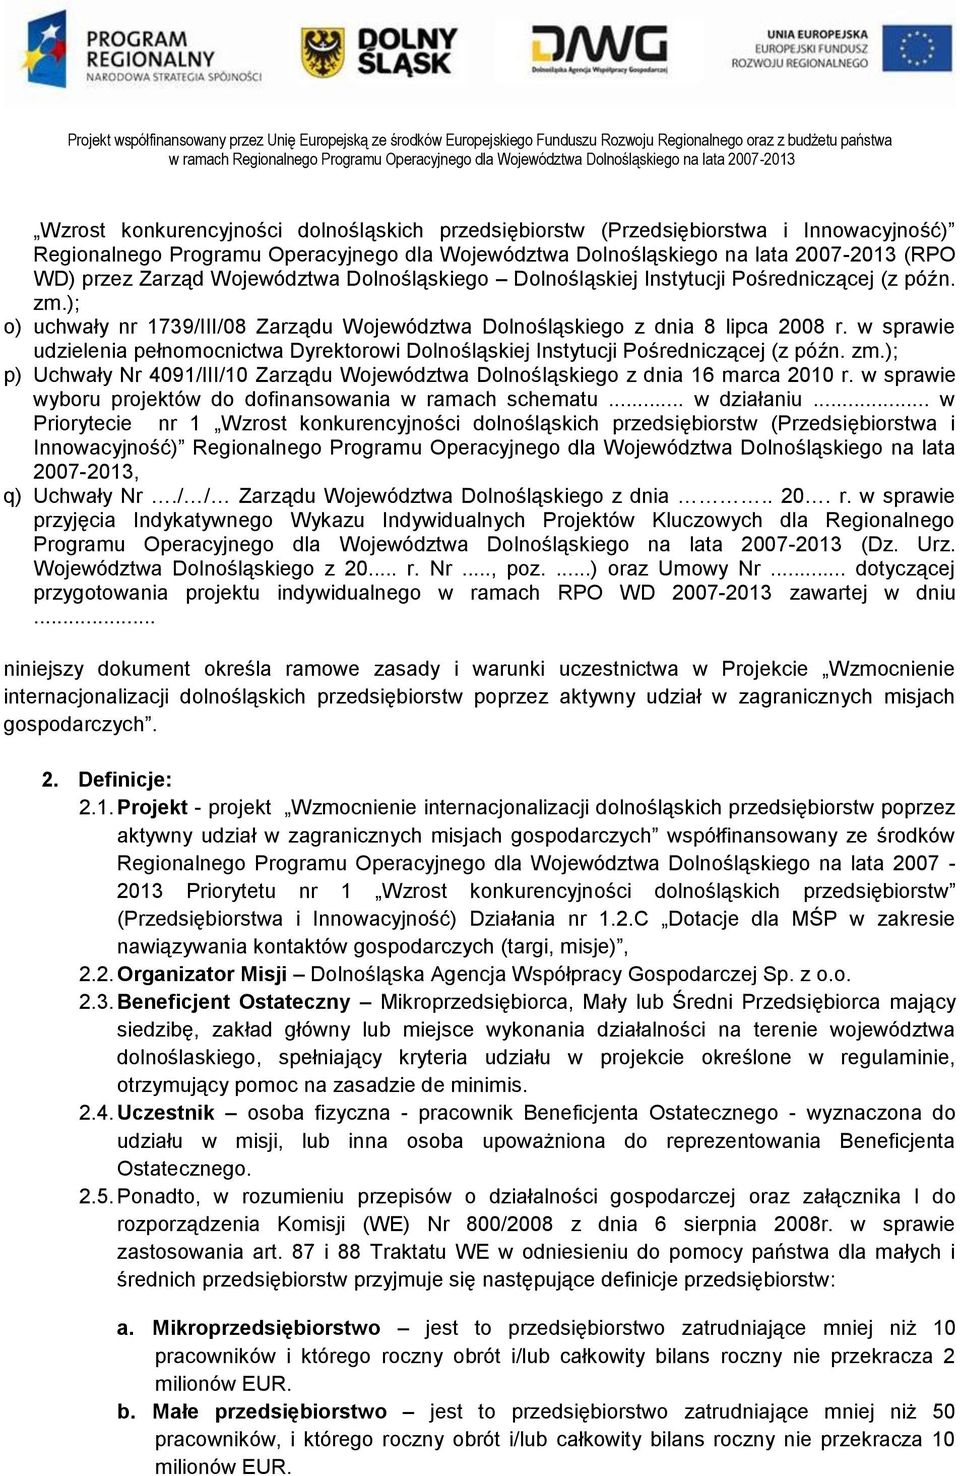 w sprawie udzielenia pełnomocnictwa Dyrektorowi Dolnośląskiej Instytucji Pośredniczącej (z późn. zm.); p) Uchwały Nr 4091/III/10 Zarządu Województwa Dolnośląskiego z dnia 16 marca 2010 r.